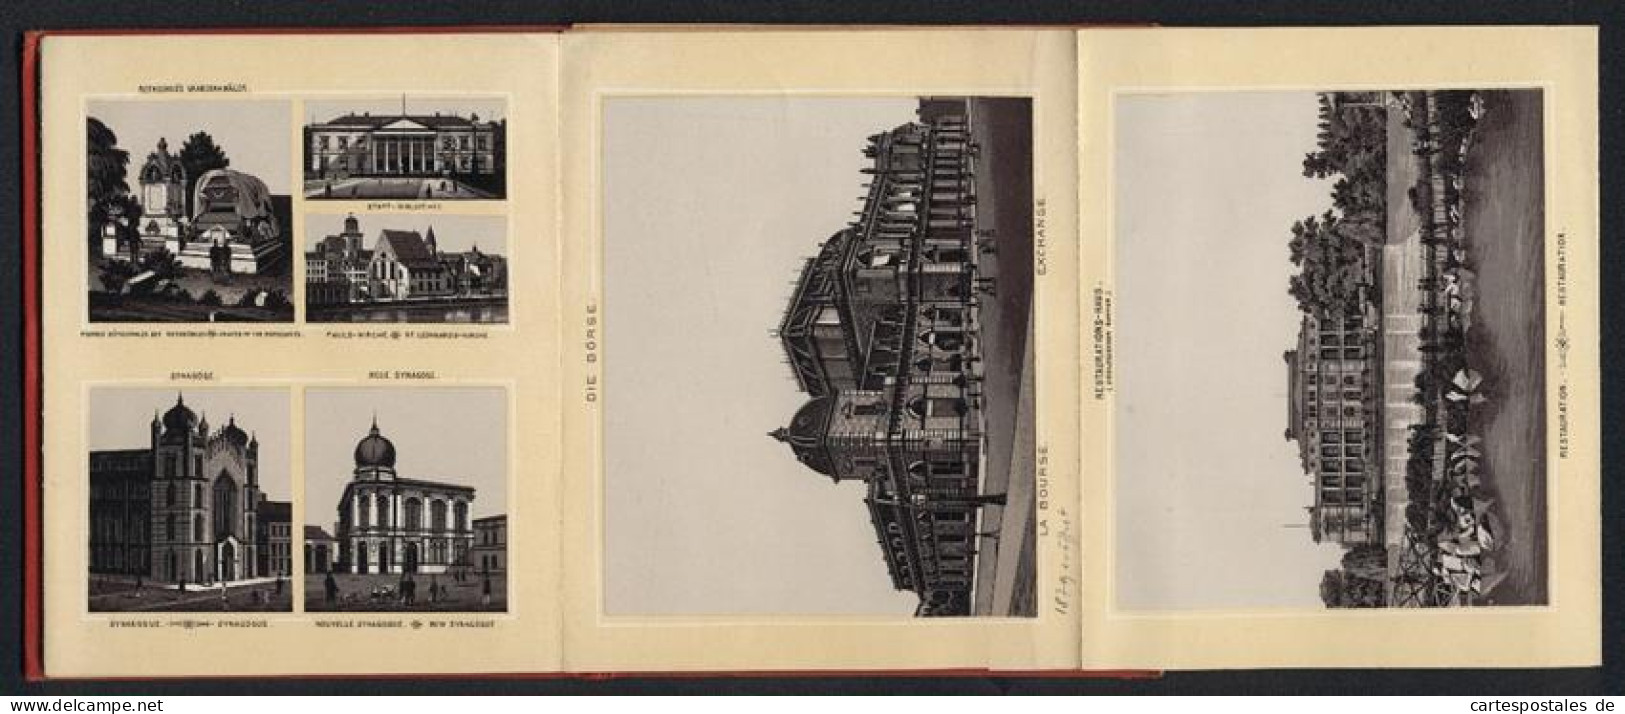 Leporello-Album 30 Lithographie-Ansichten Frankfurt / Main, Synagogen, Rothschild Grab, Zollhafen, Panorama, Bahnhof  - Litografia